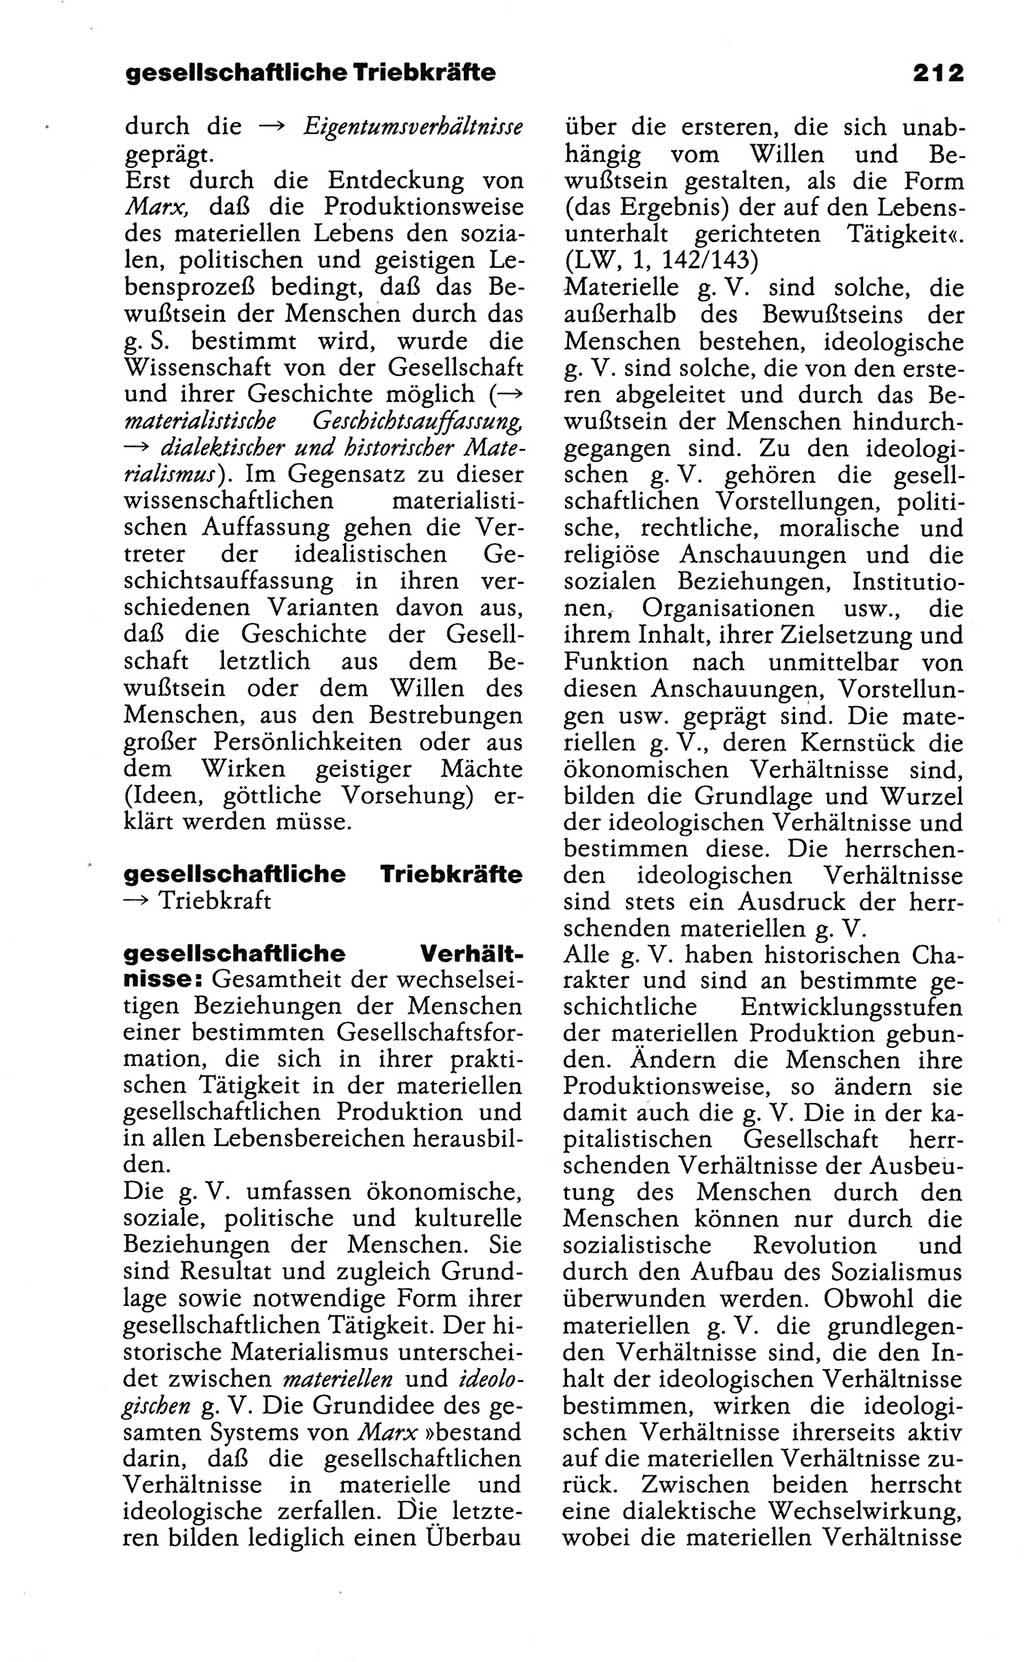 Wörterbuch der marxistisch-leninistischen Philosophie [Deutsche Demokratische Republik (DDR)] 1986, Seite 212 (Wb. ML Phil. DDR 1986, S. 212)